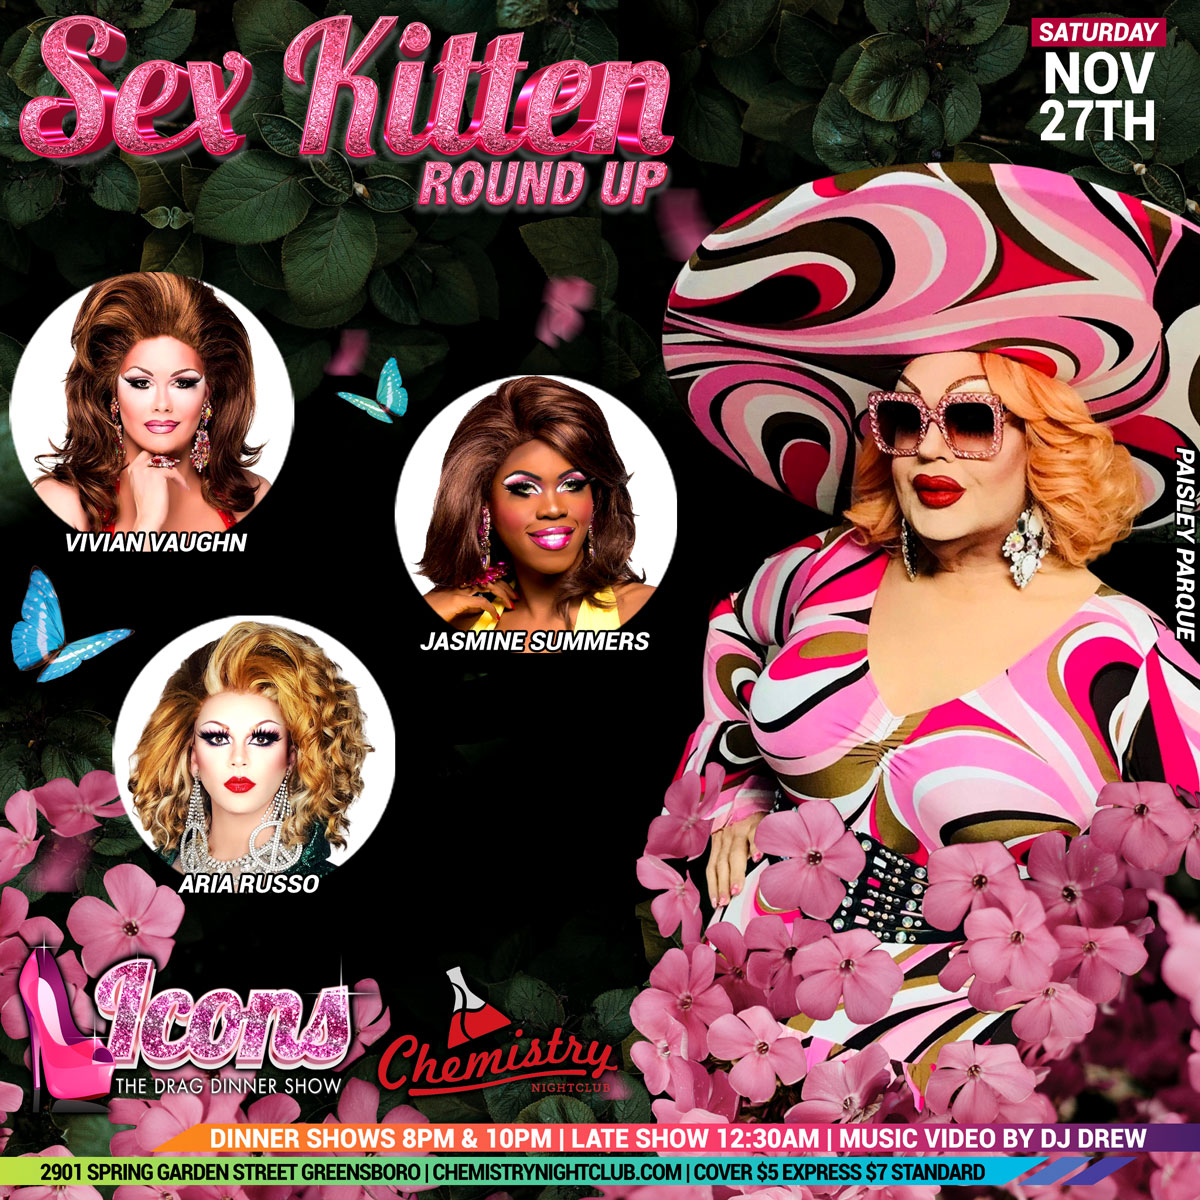 Sex Kitten Round Up Nov 27